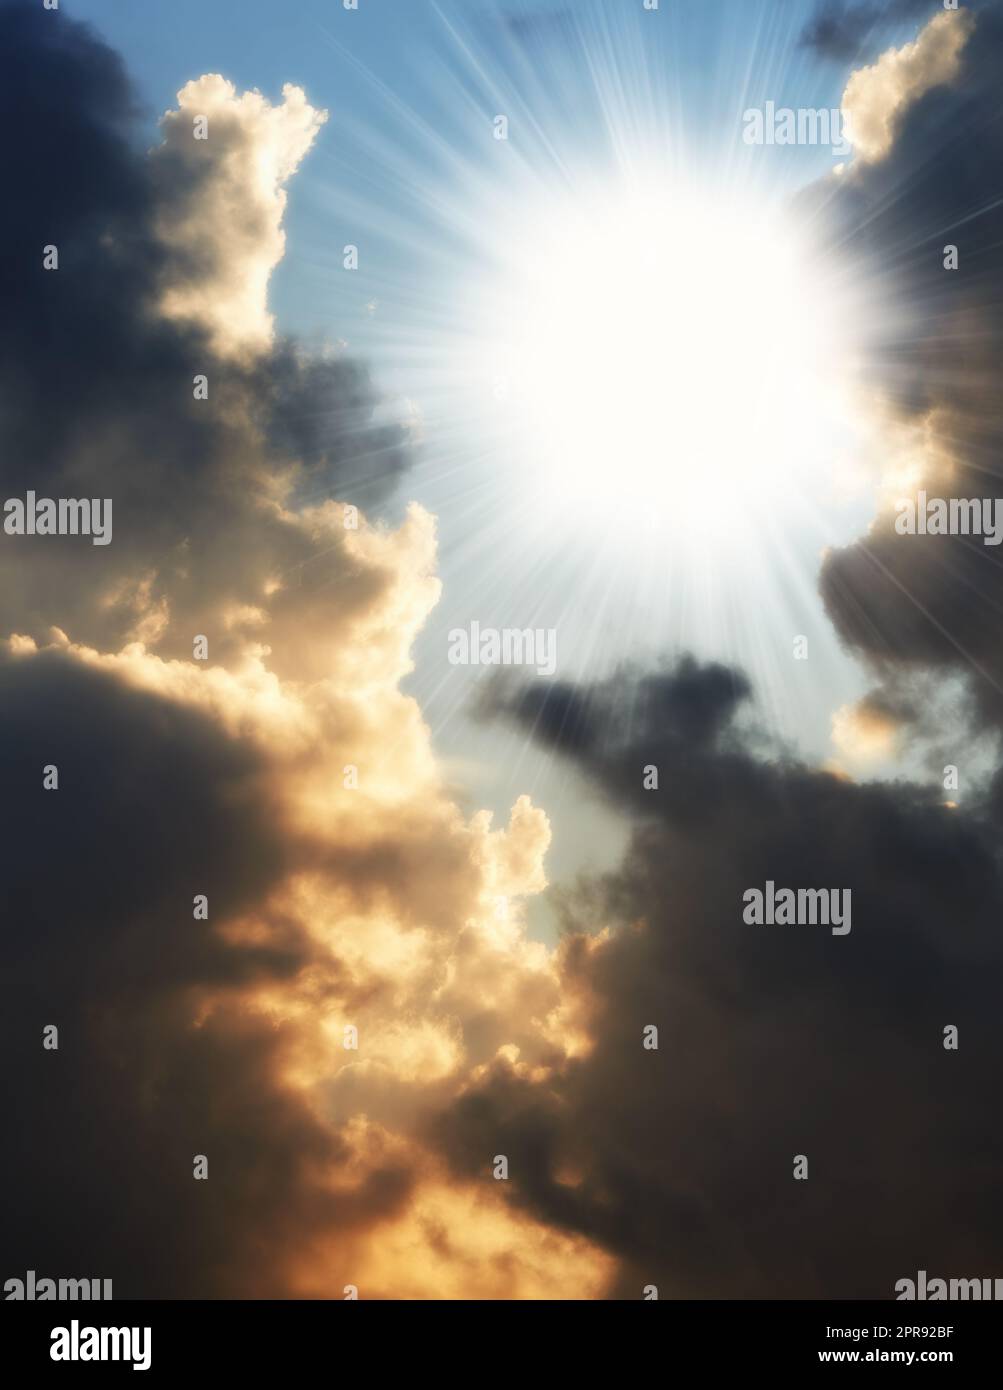 Dunkle Wolken im Hintergrund des Sonnenuntergangs mit Kopierraum. Wolkenblick über den dramatischen Himmel mit Gewitterspuren am Horizont. Landschaft mit Sonnenschein bei Herbst- oder Winterwetter Stockfoto